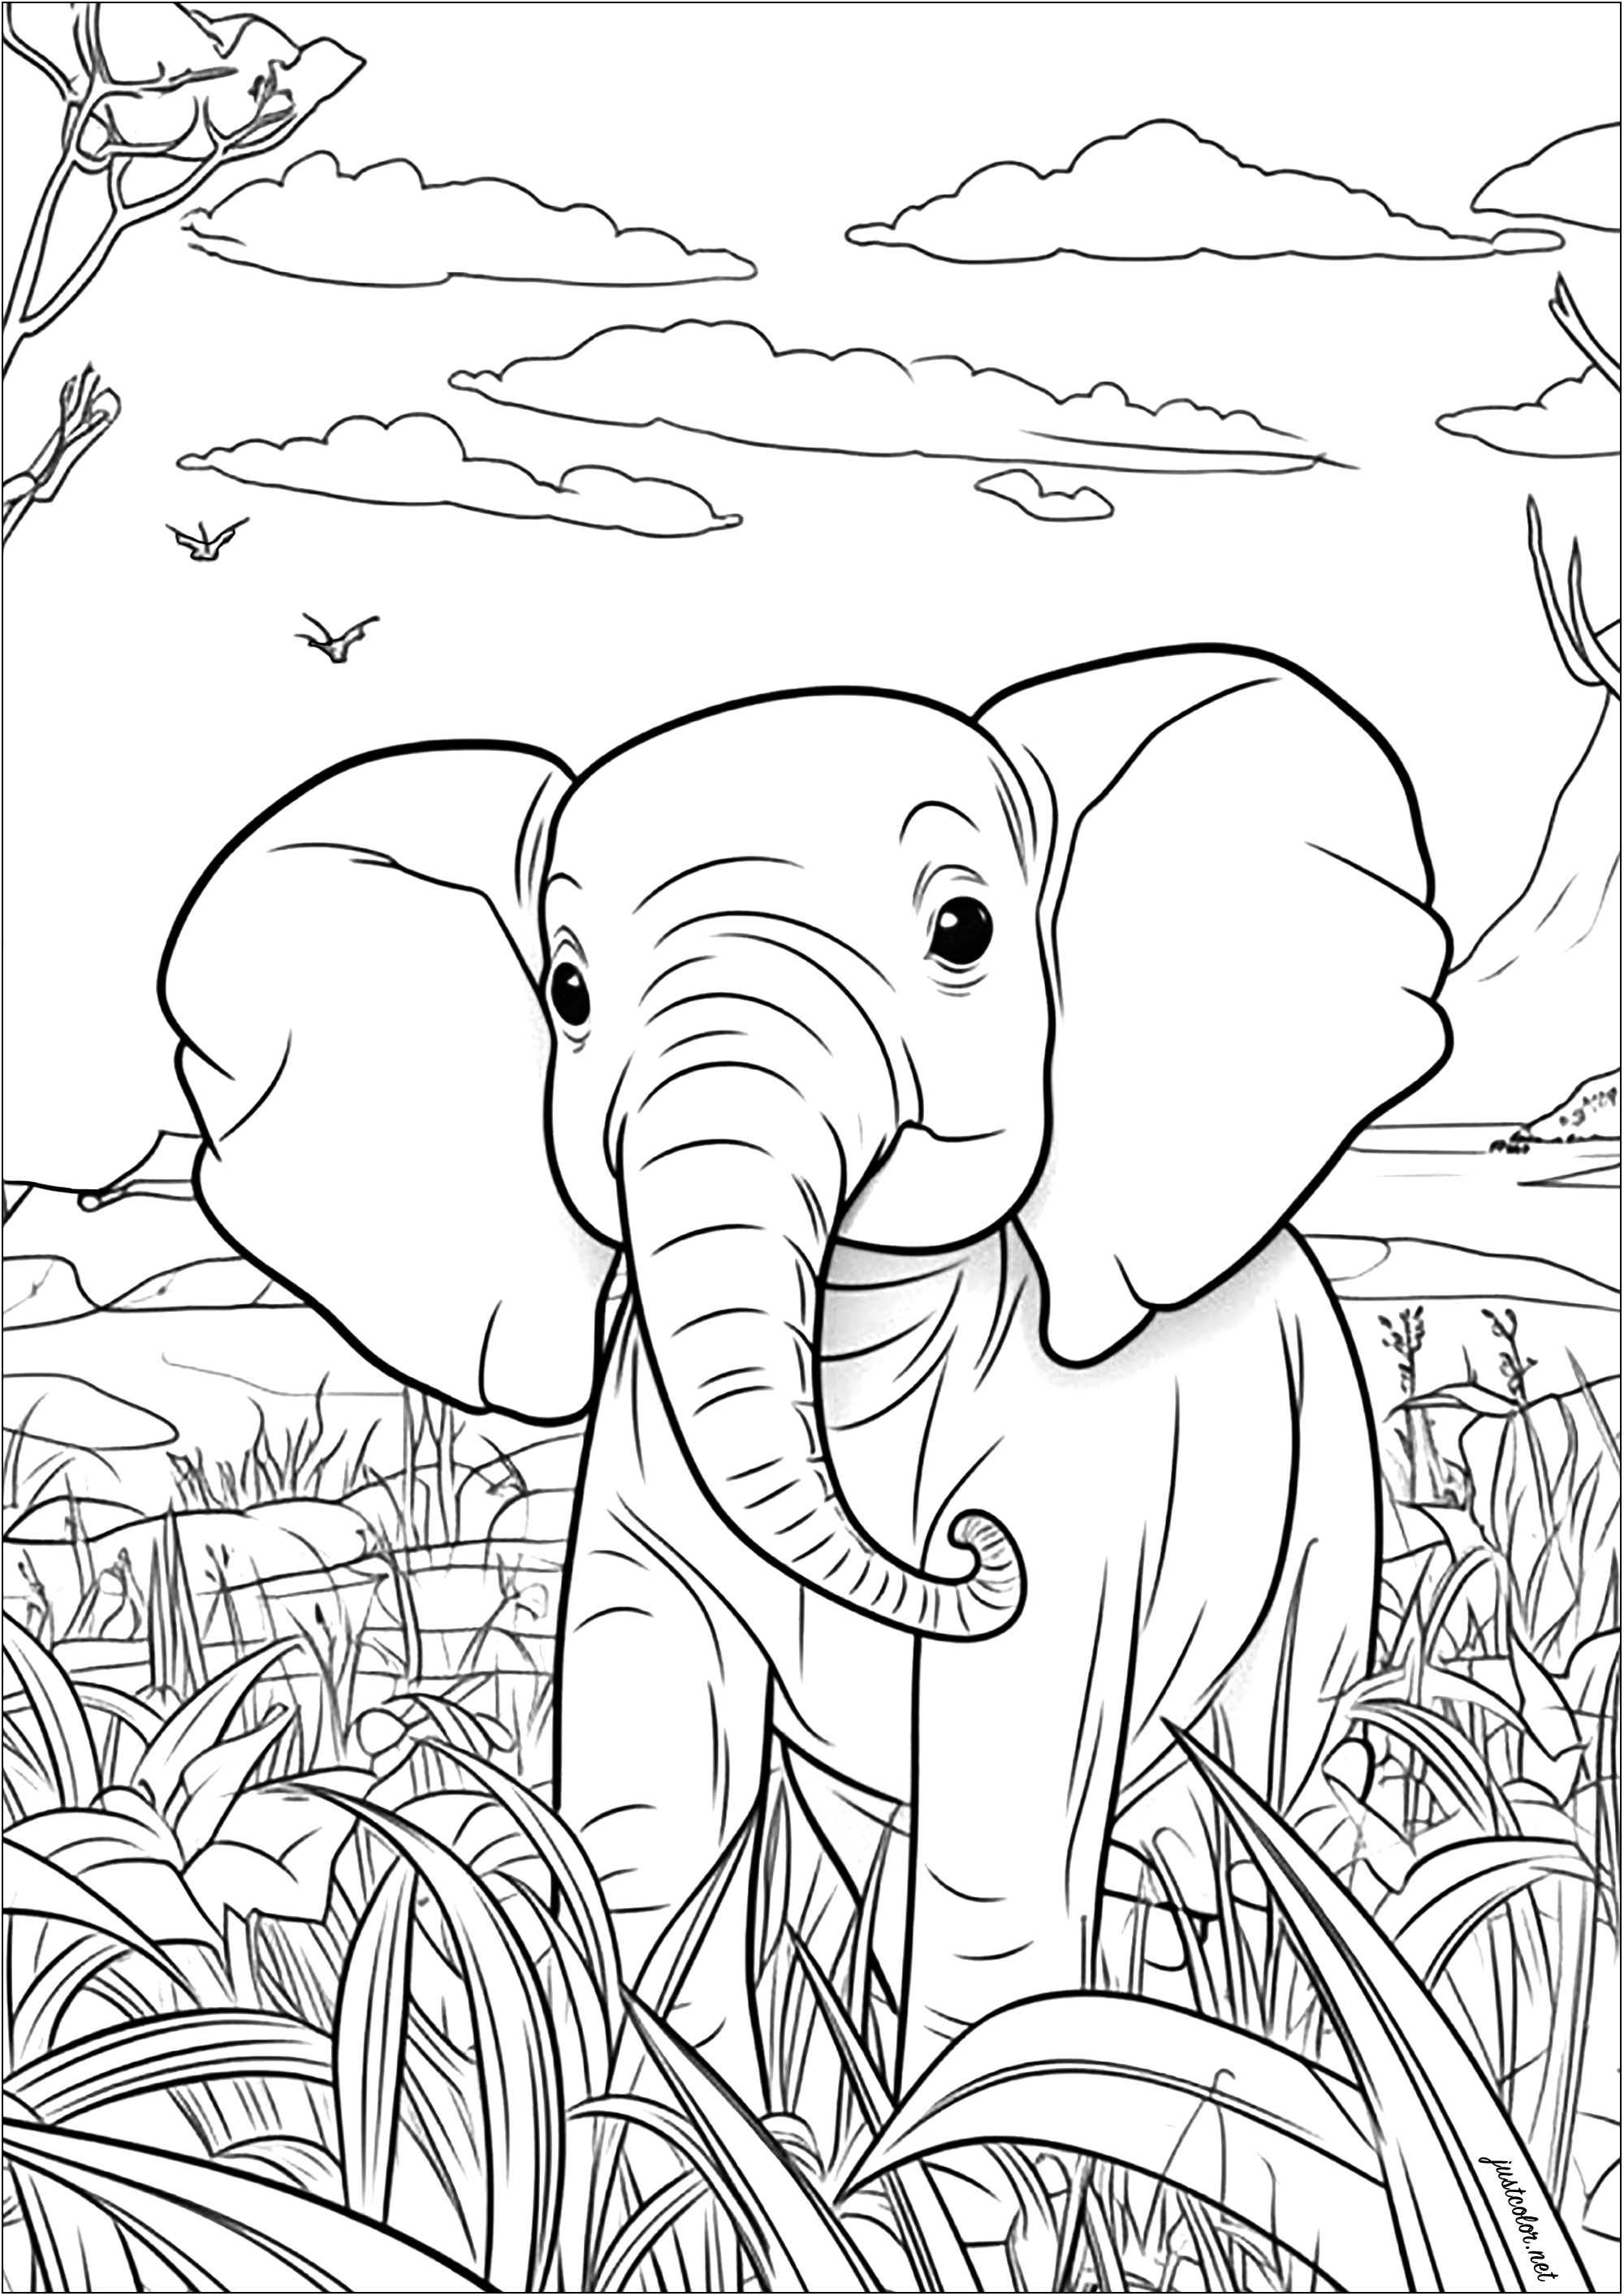 Diese schöne Malvorlage zeigt einen jungen Elefanten, der durch die Savanne spaziert. Sie können sehen, dass er von hohen Bäumen und Gräsern umgeben ist.